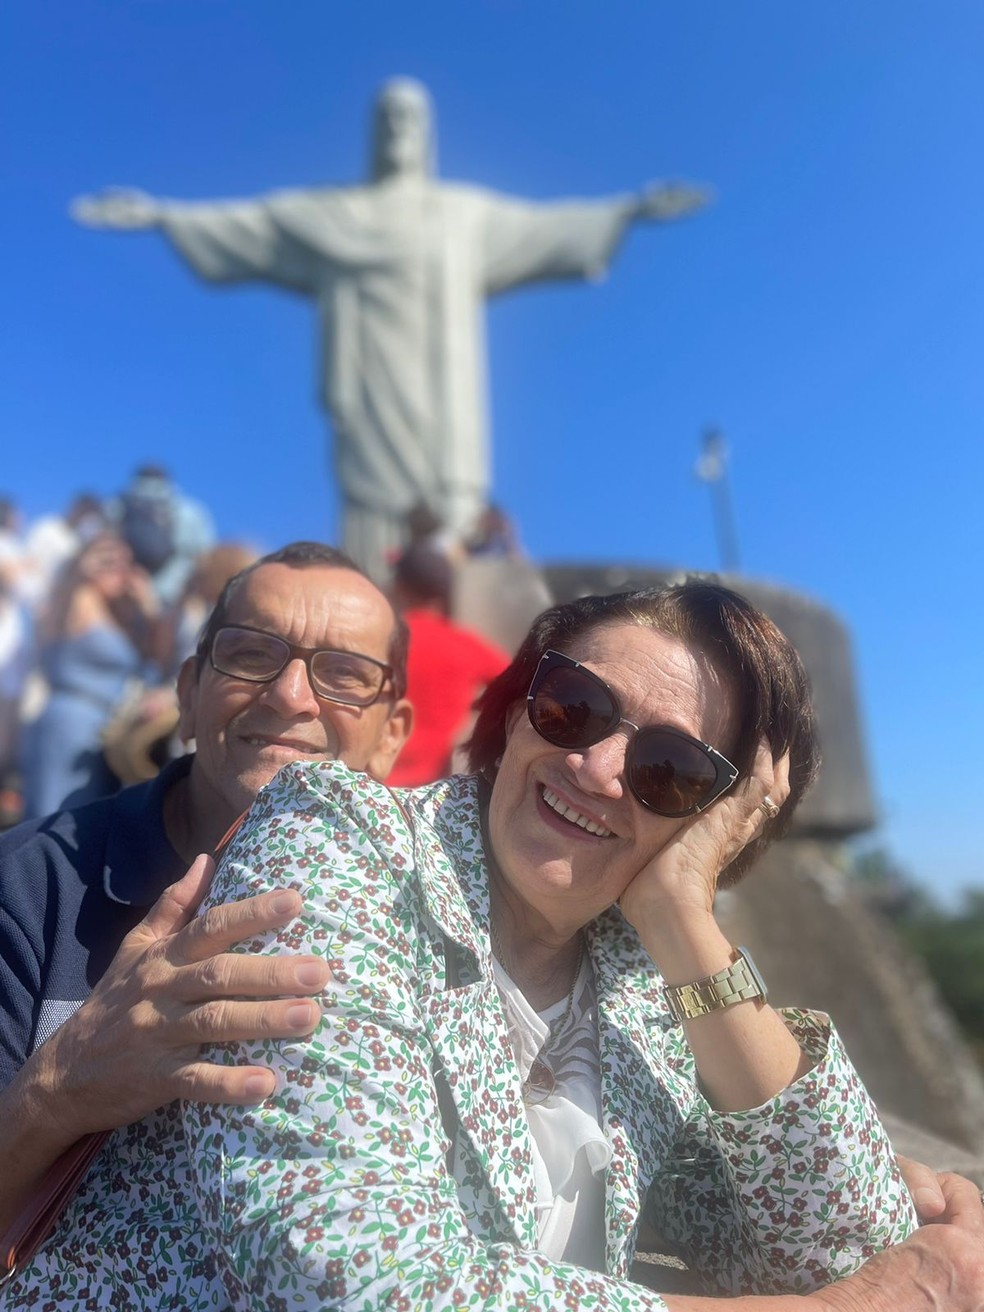 Geraldo e Osélia Coelho no Cristo Redentor. Os dois foram mortos no sábado (25) em um apartamento na Zona Sul do Rio — Foto: Felipe Coelho/ Arquivo pessoal